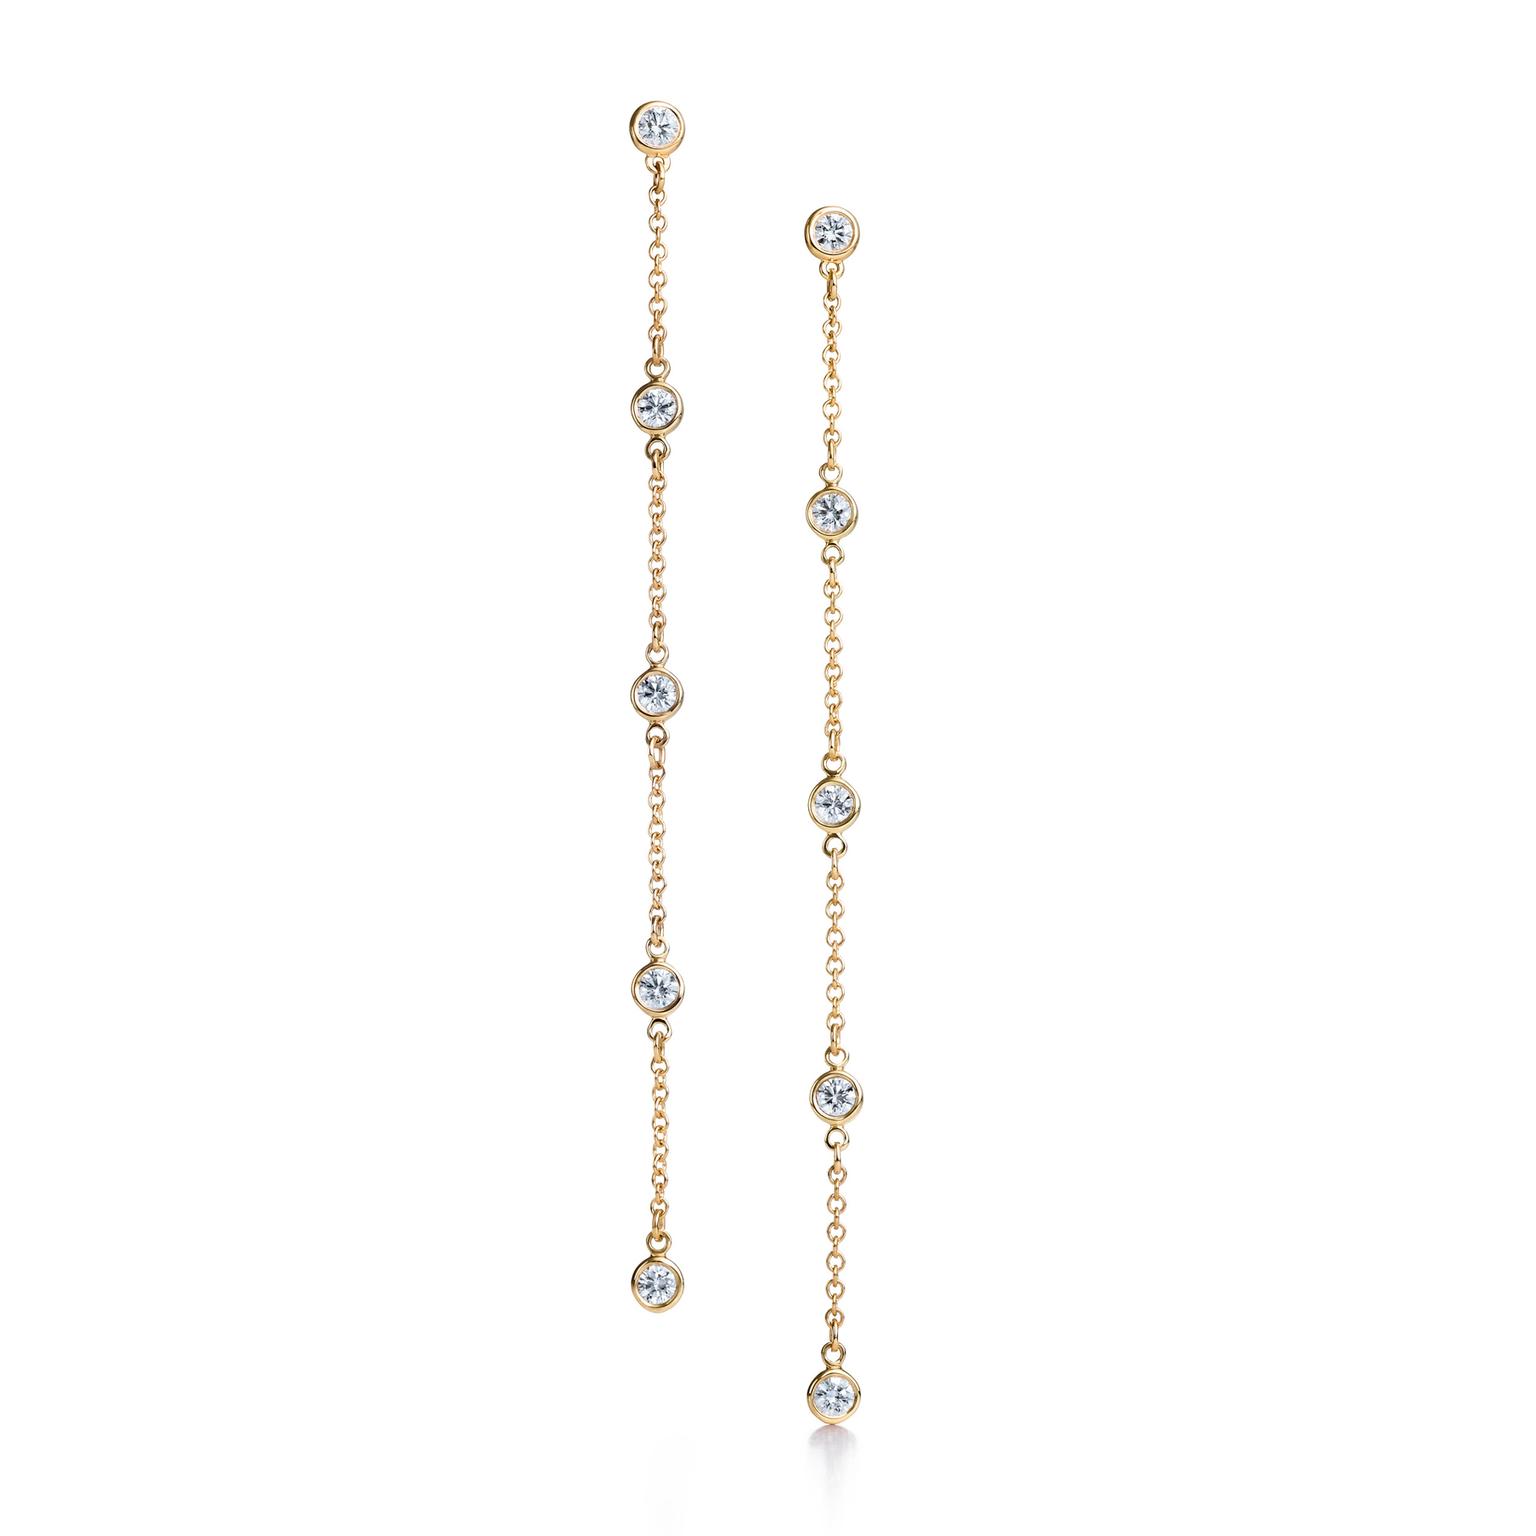 Elsa Peretti diamond earrings